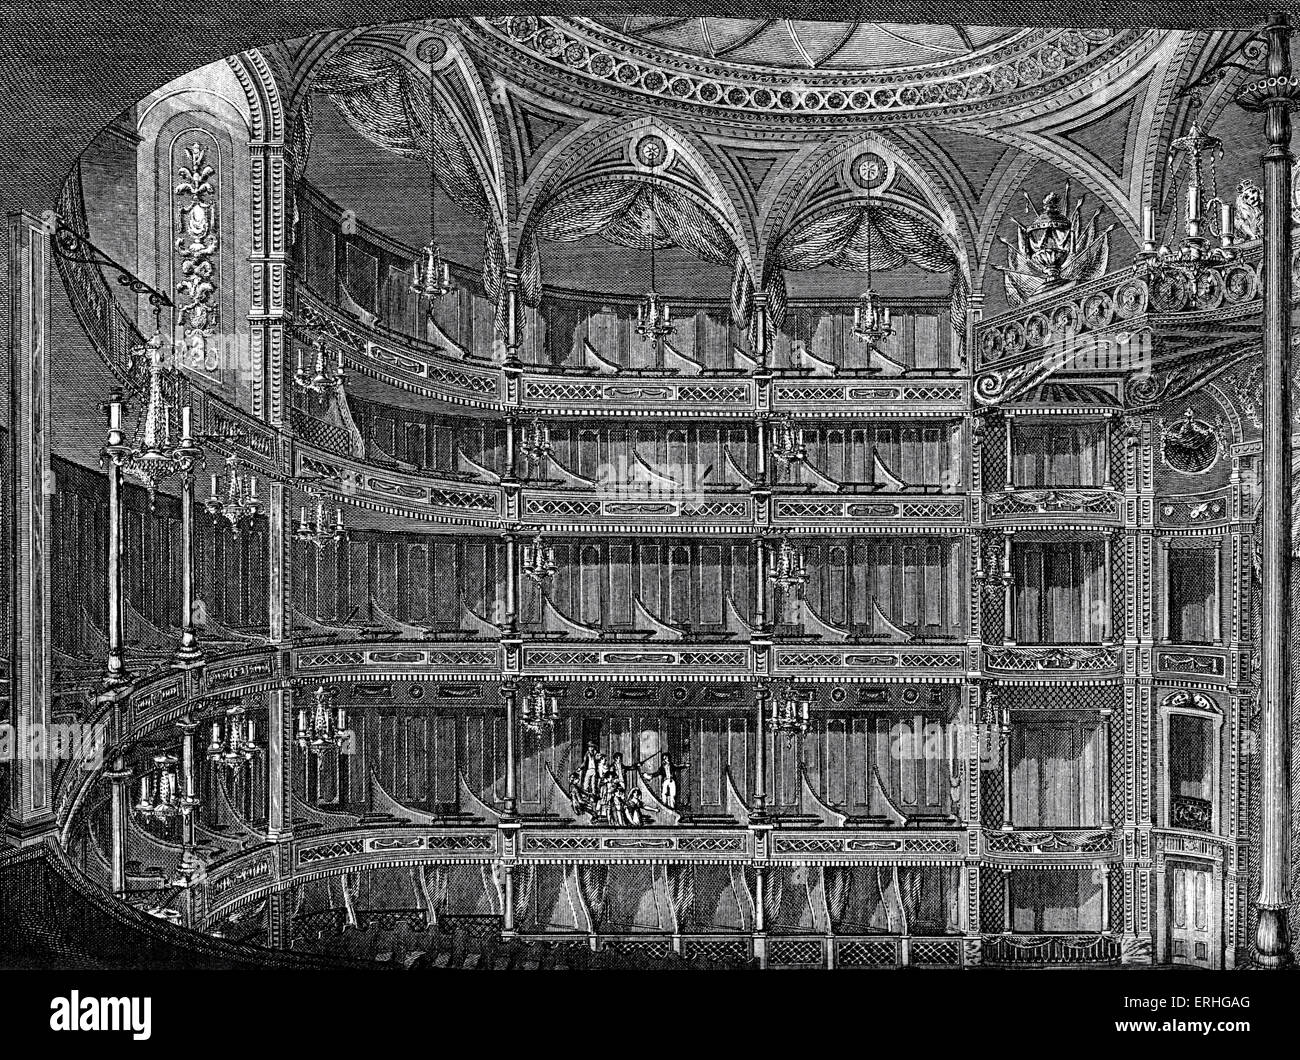 Royal Opera House - intérieur, Covent Garden, Londres. Gravure de boîtes de l'auditoire. 18e siècle. Banque D'Images